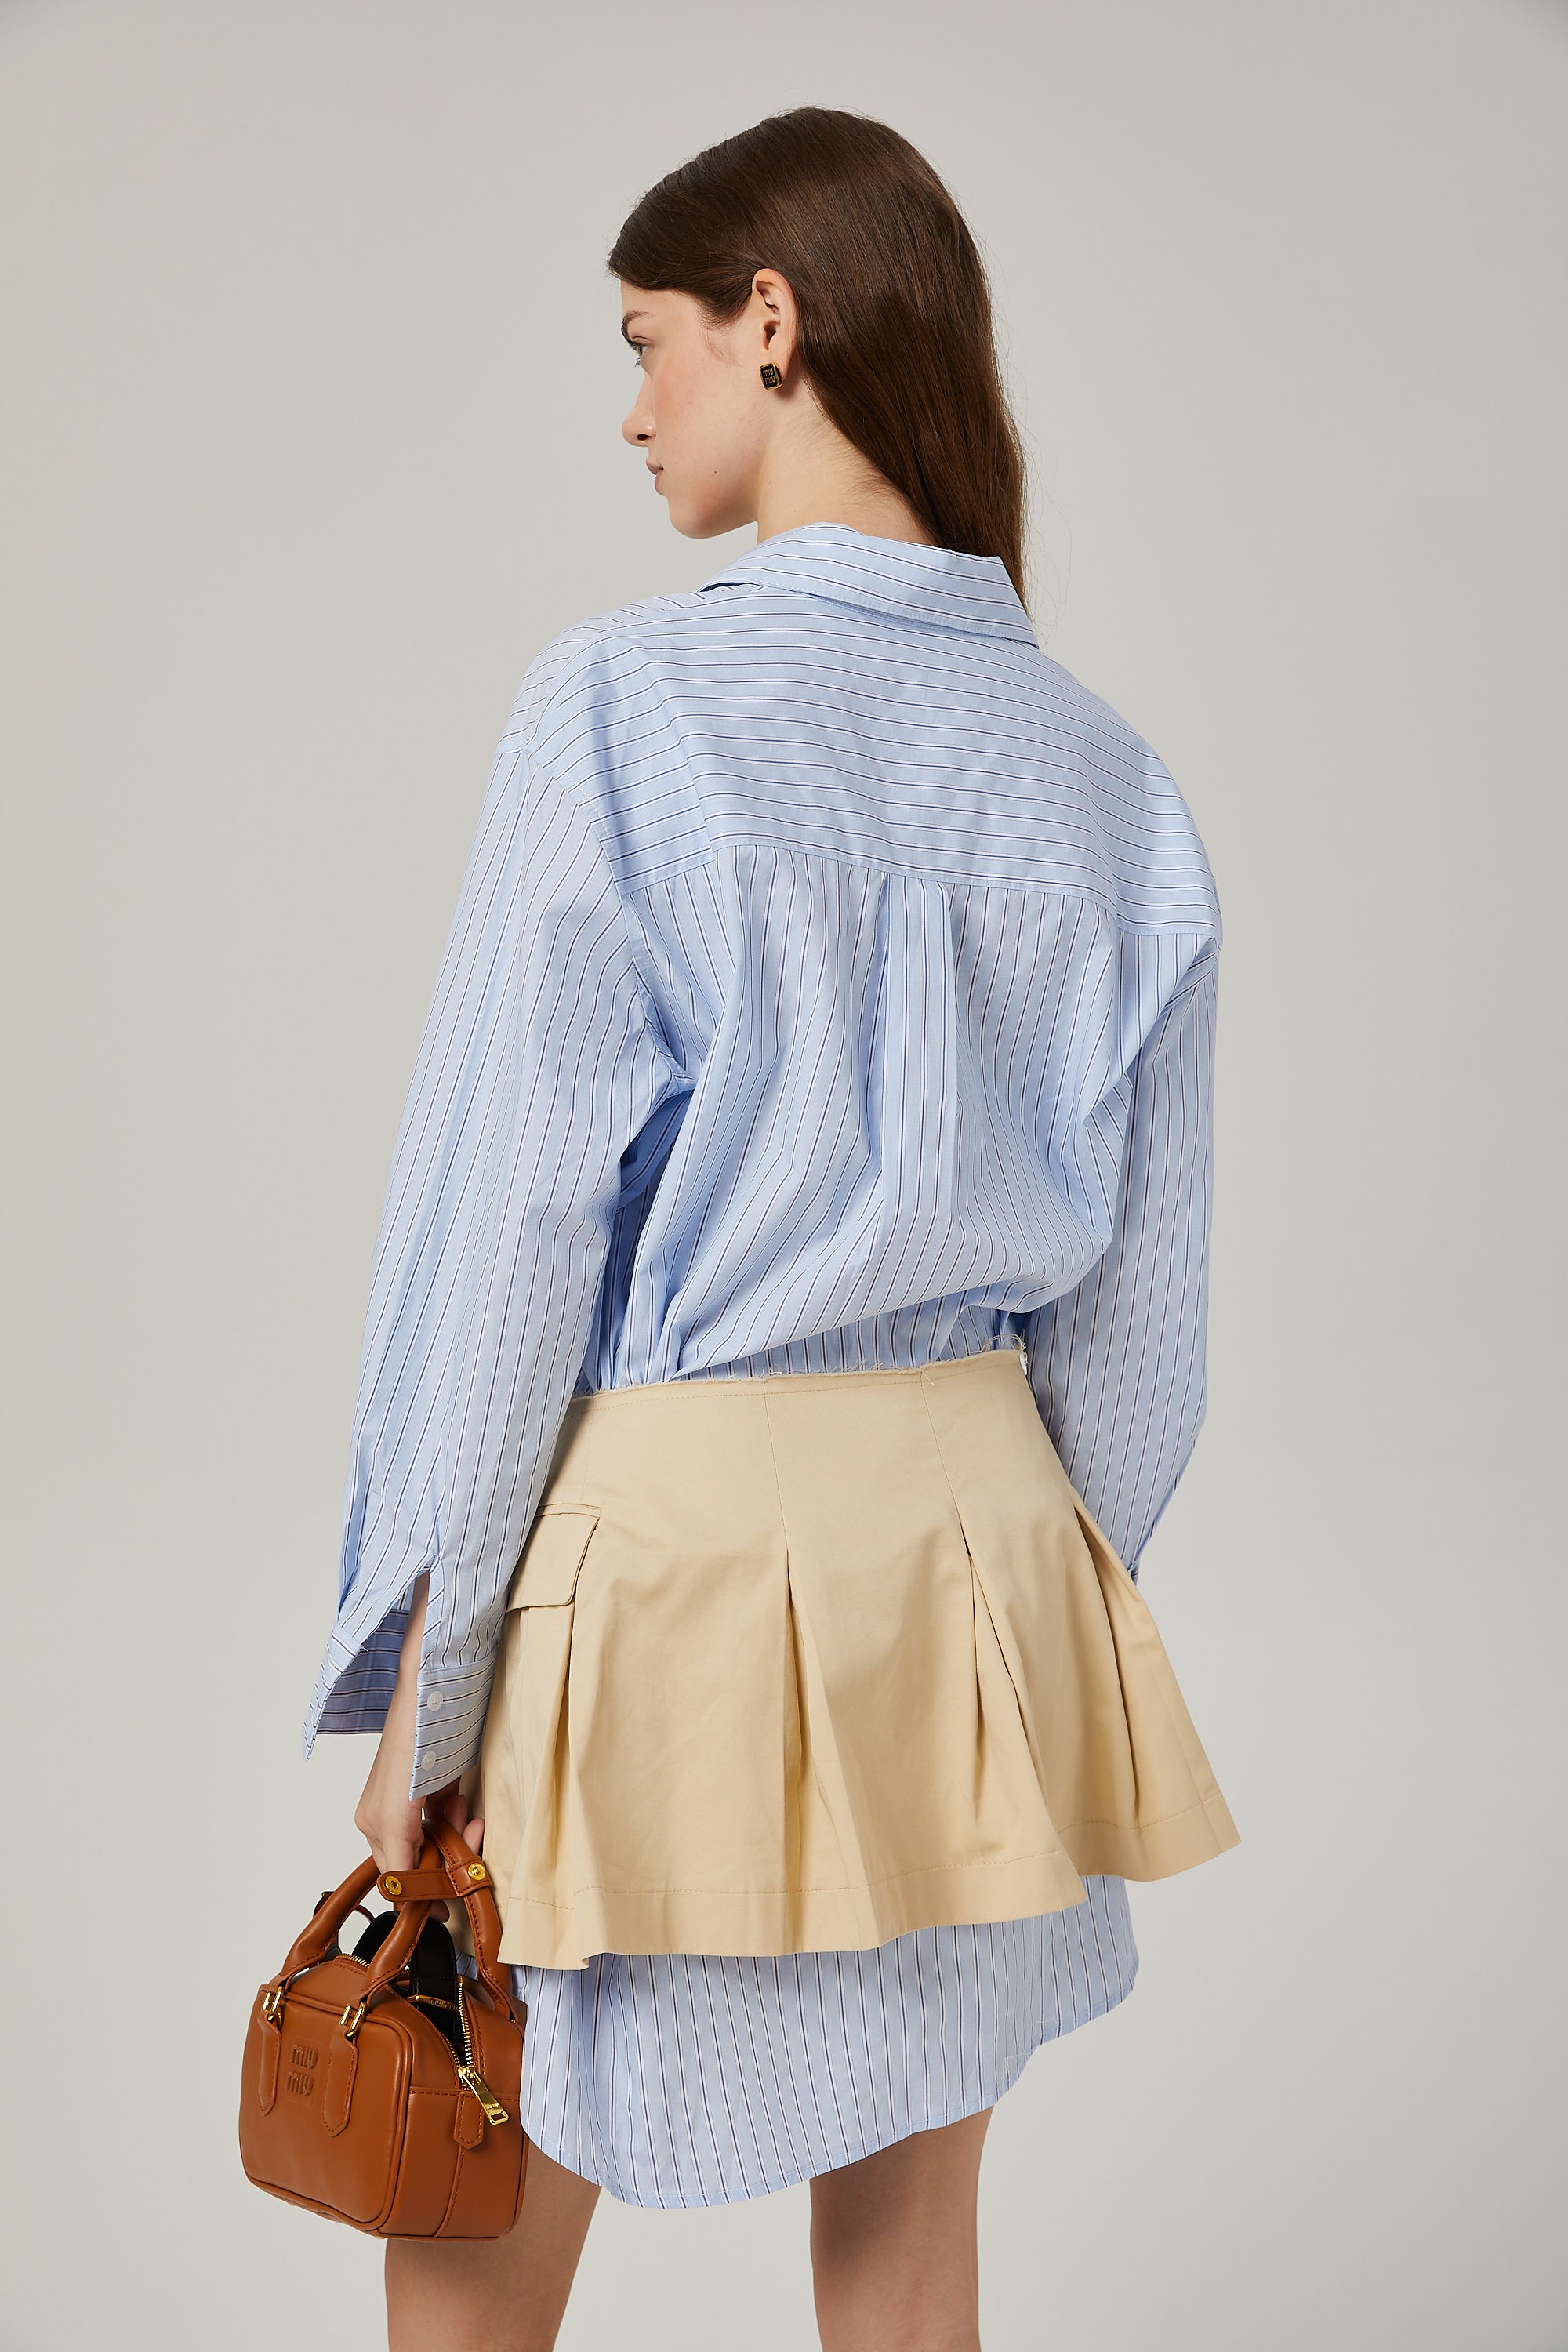 Gisèle deconstructed shirt & skirt matching set